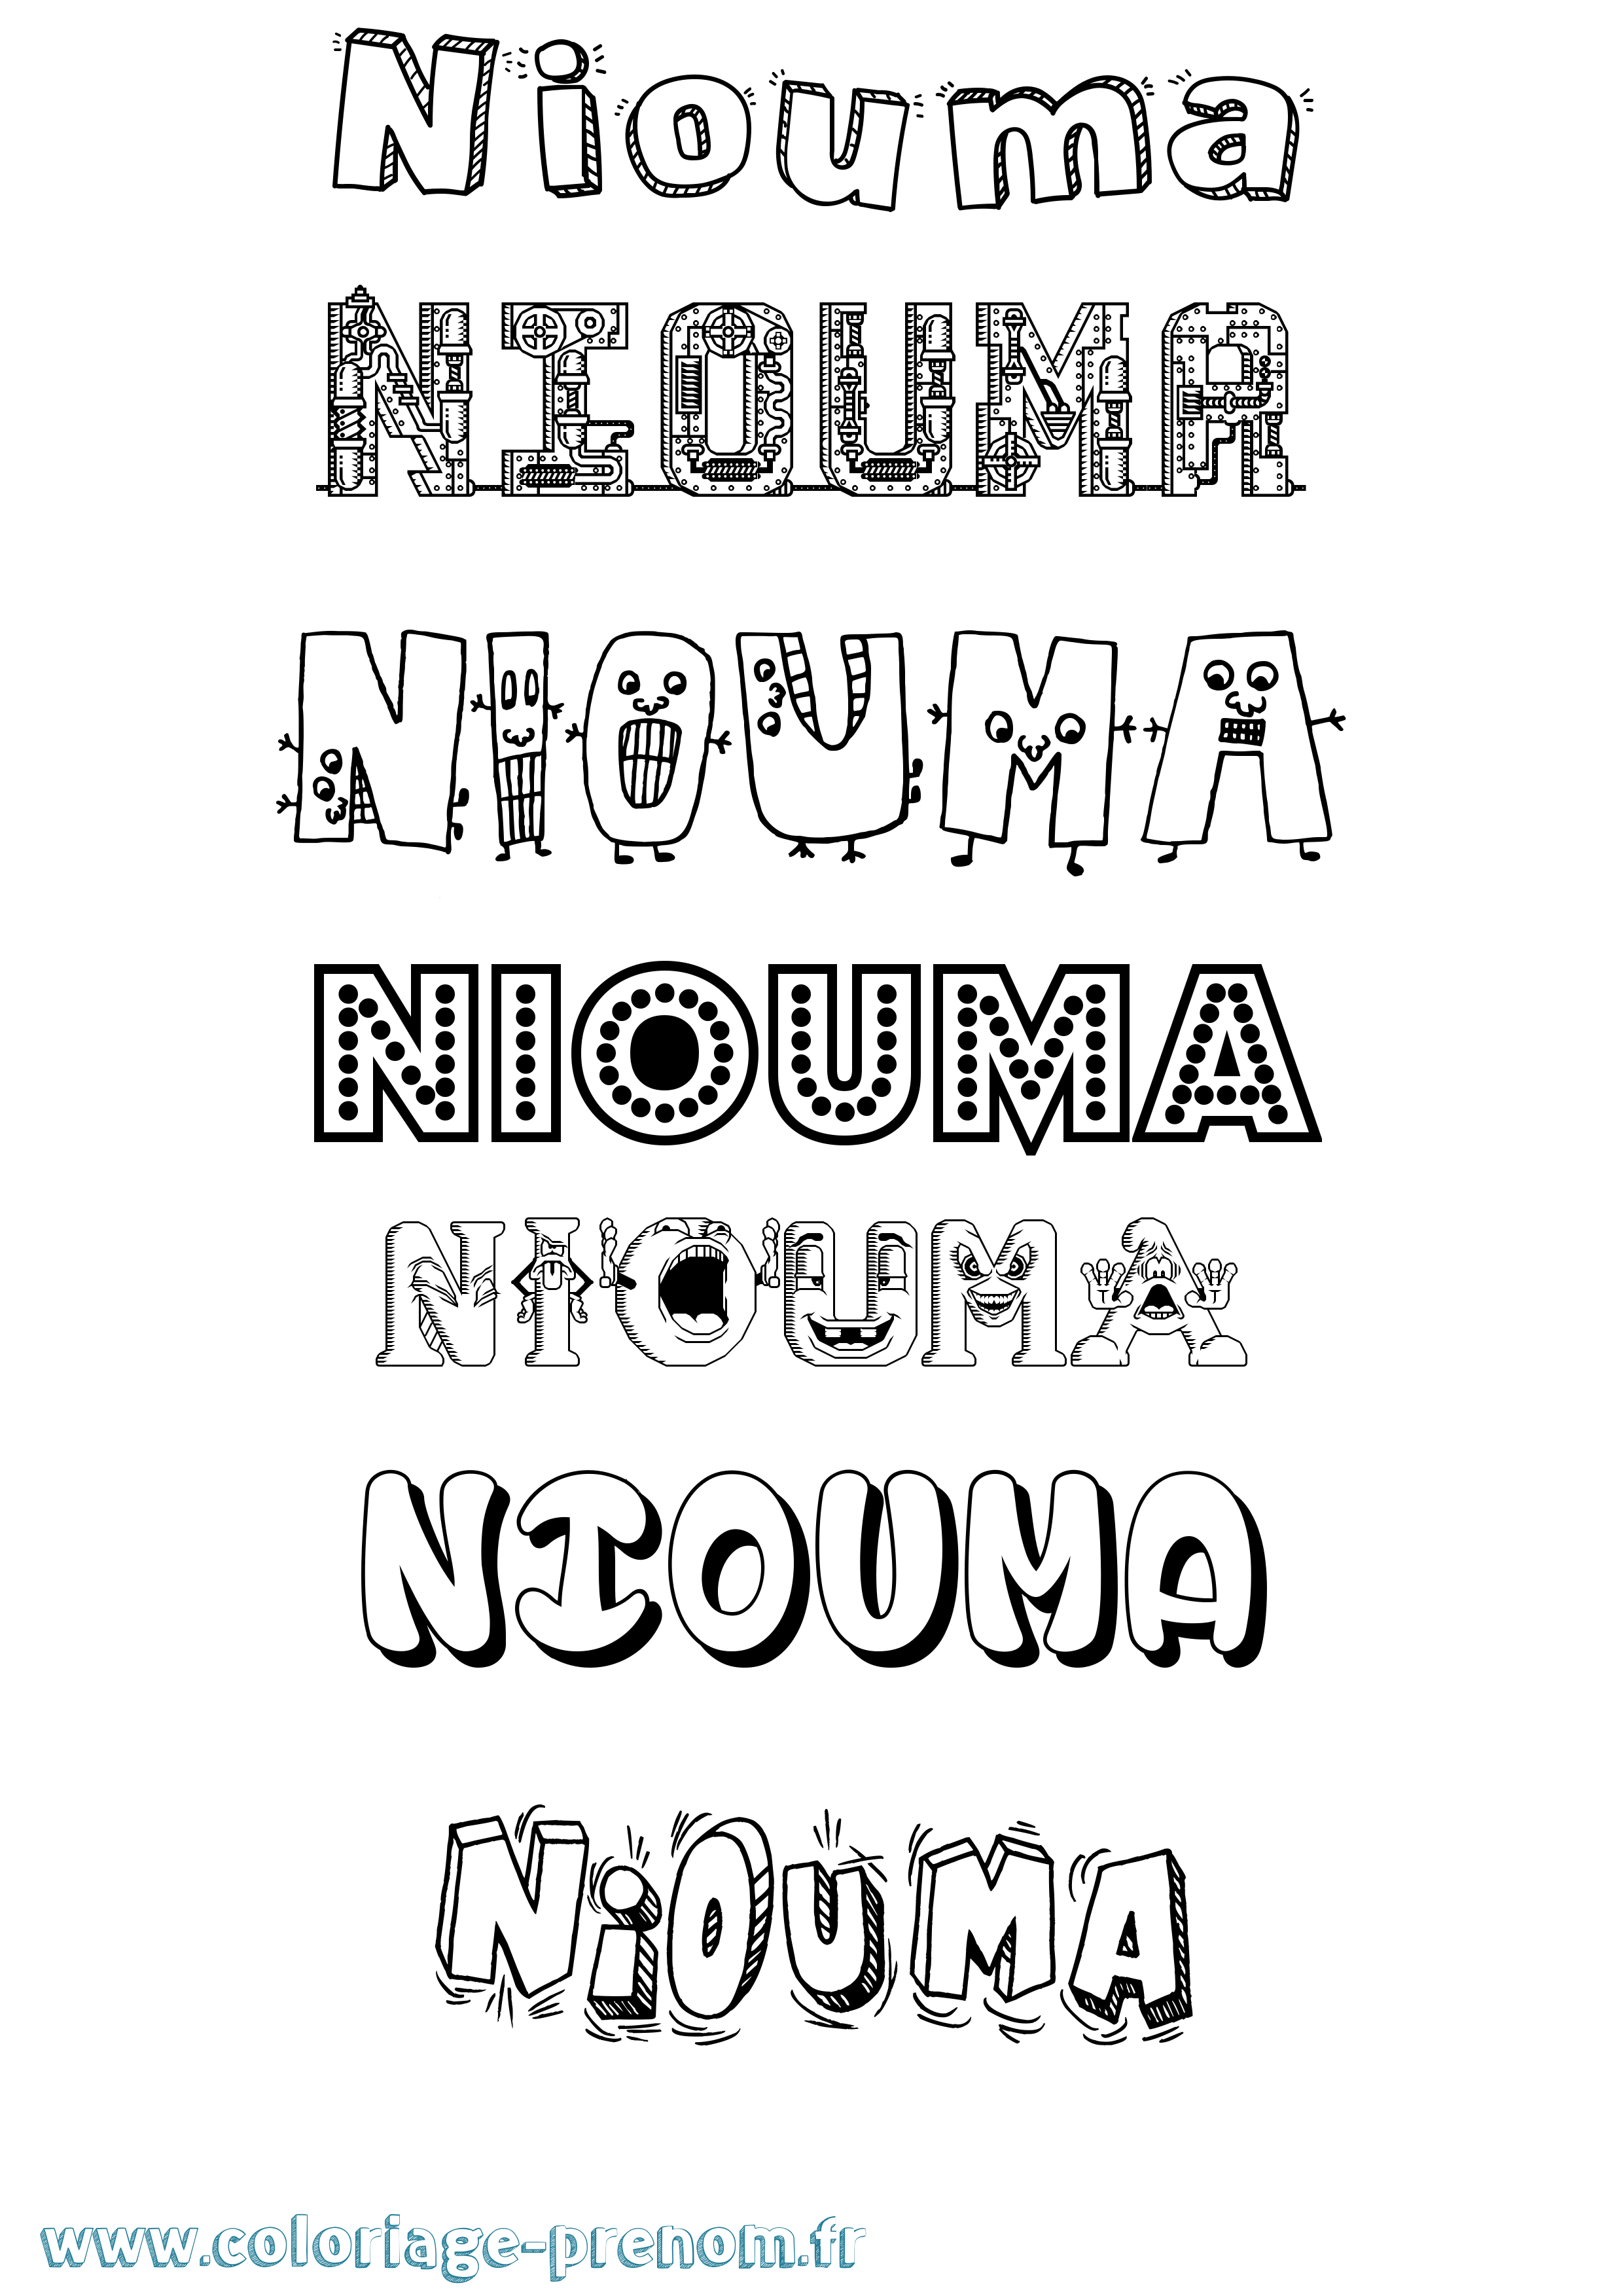 Coloriage prénom Niouma